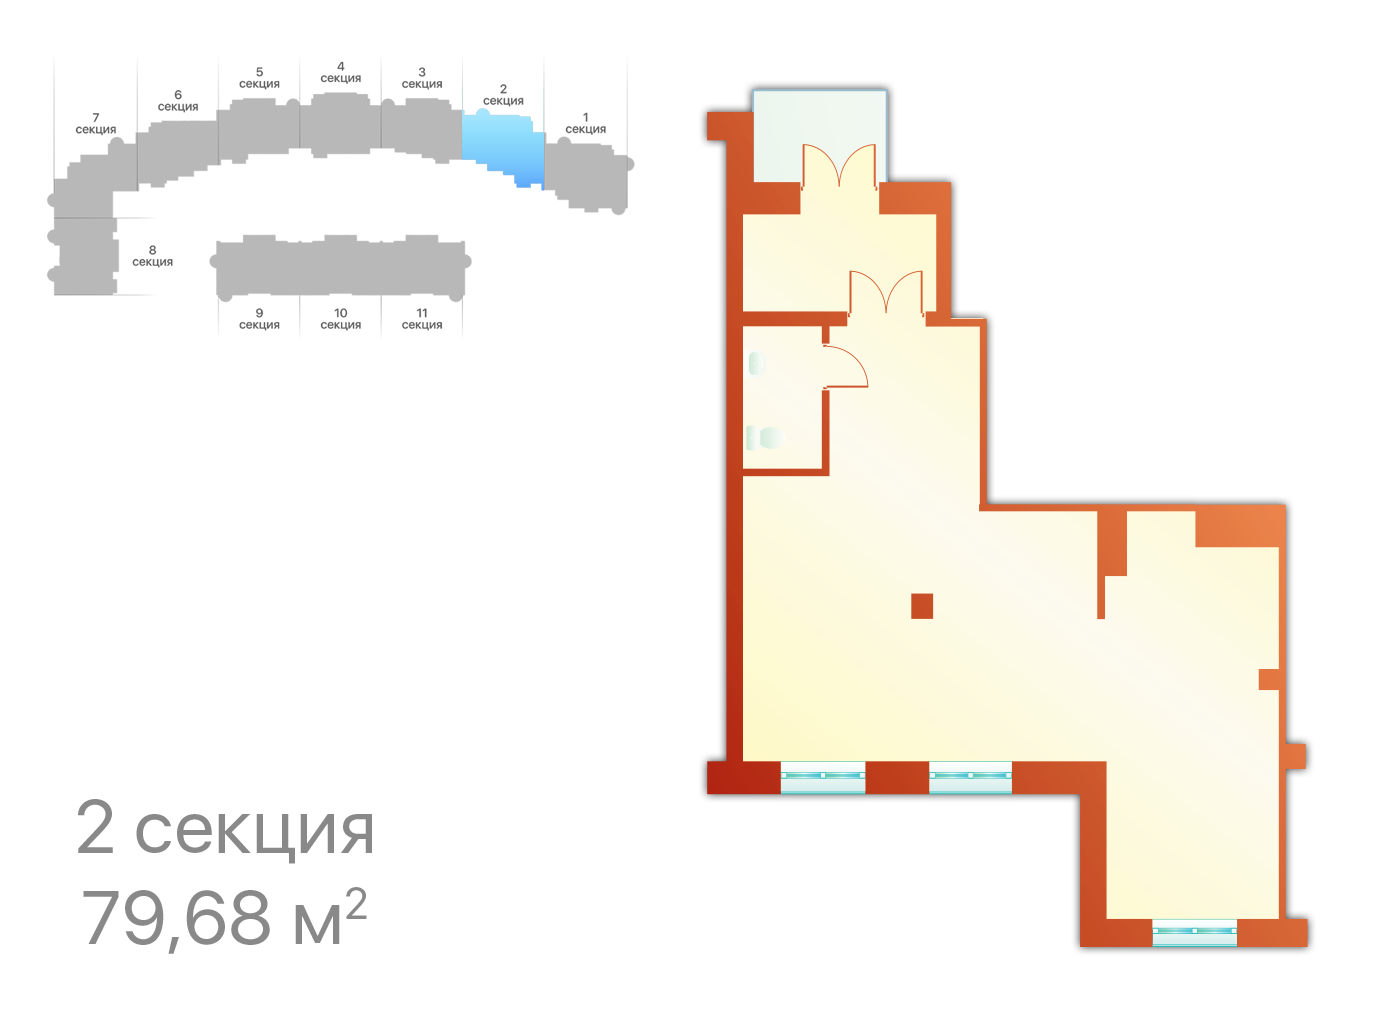 Секция 2, ЖК Шереметевский дворец, коммерческие помещения